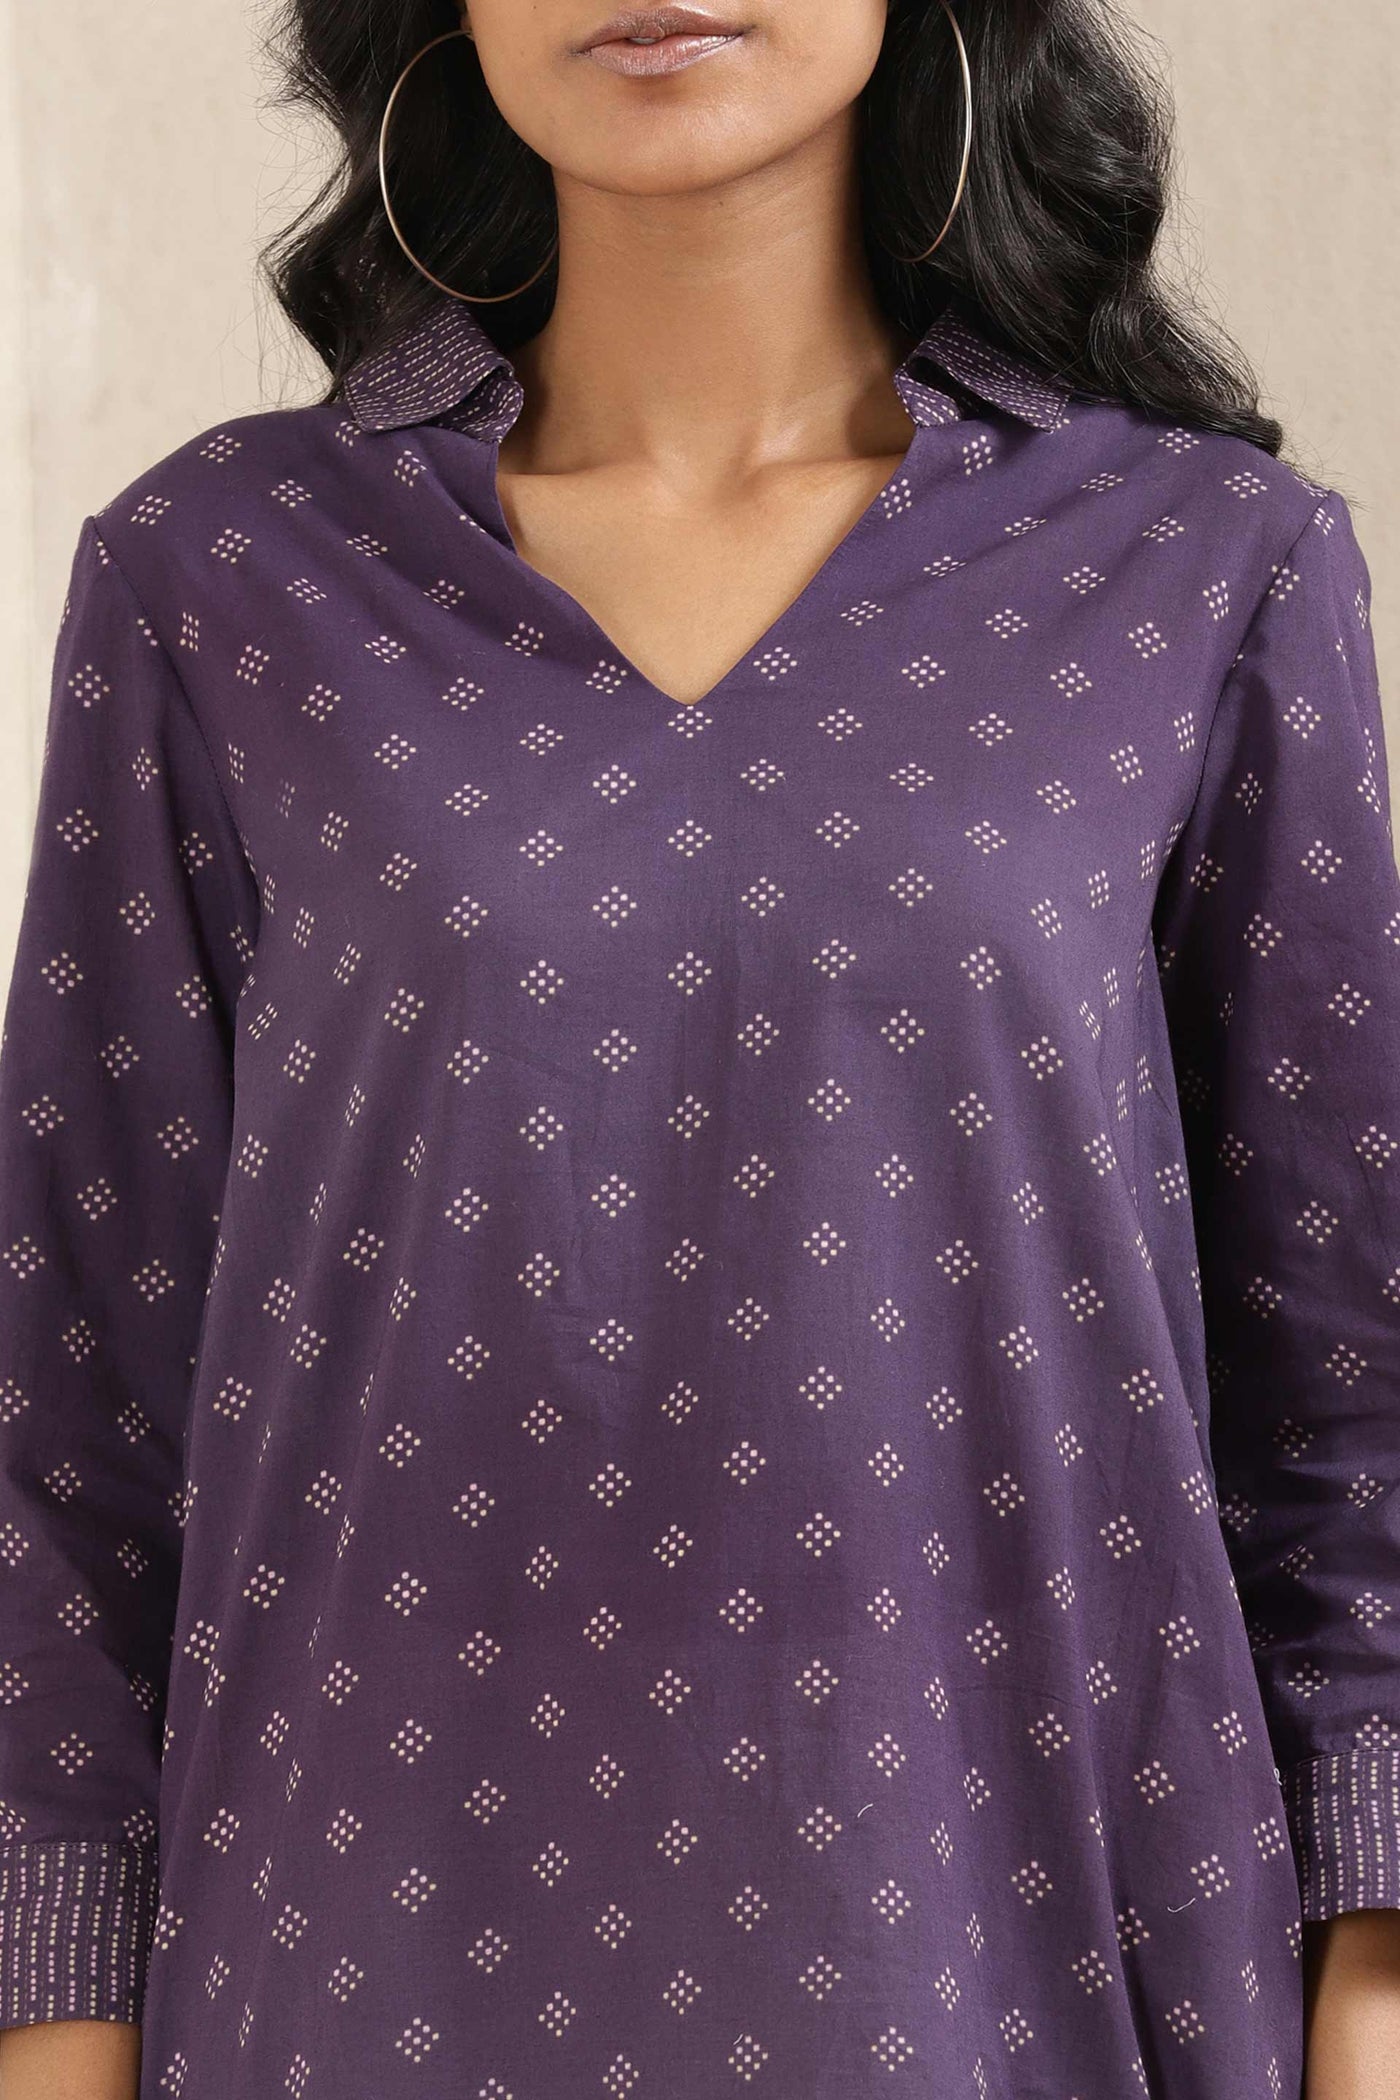 ritu kumar Ink Blue Printed Cotton Kurti online shopping melange singapore indian designer wear